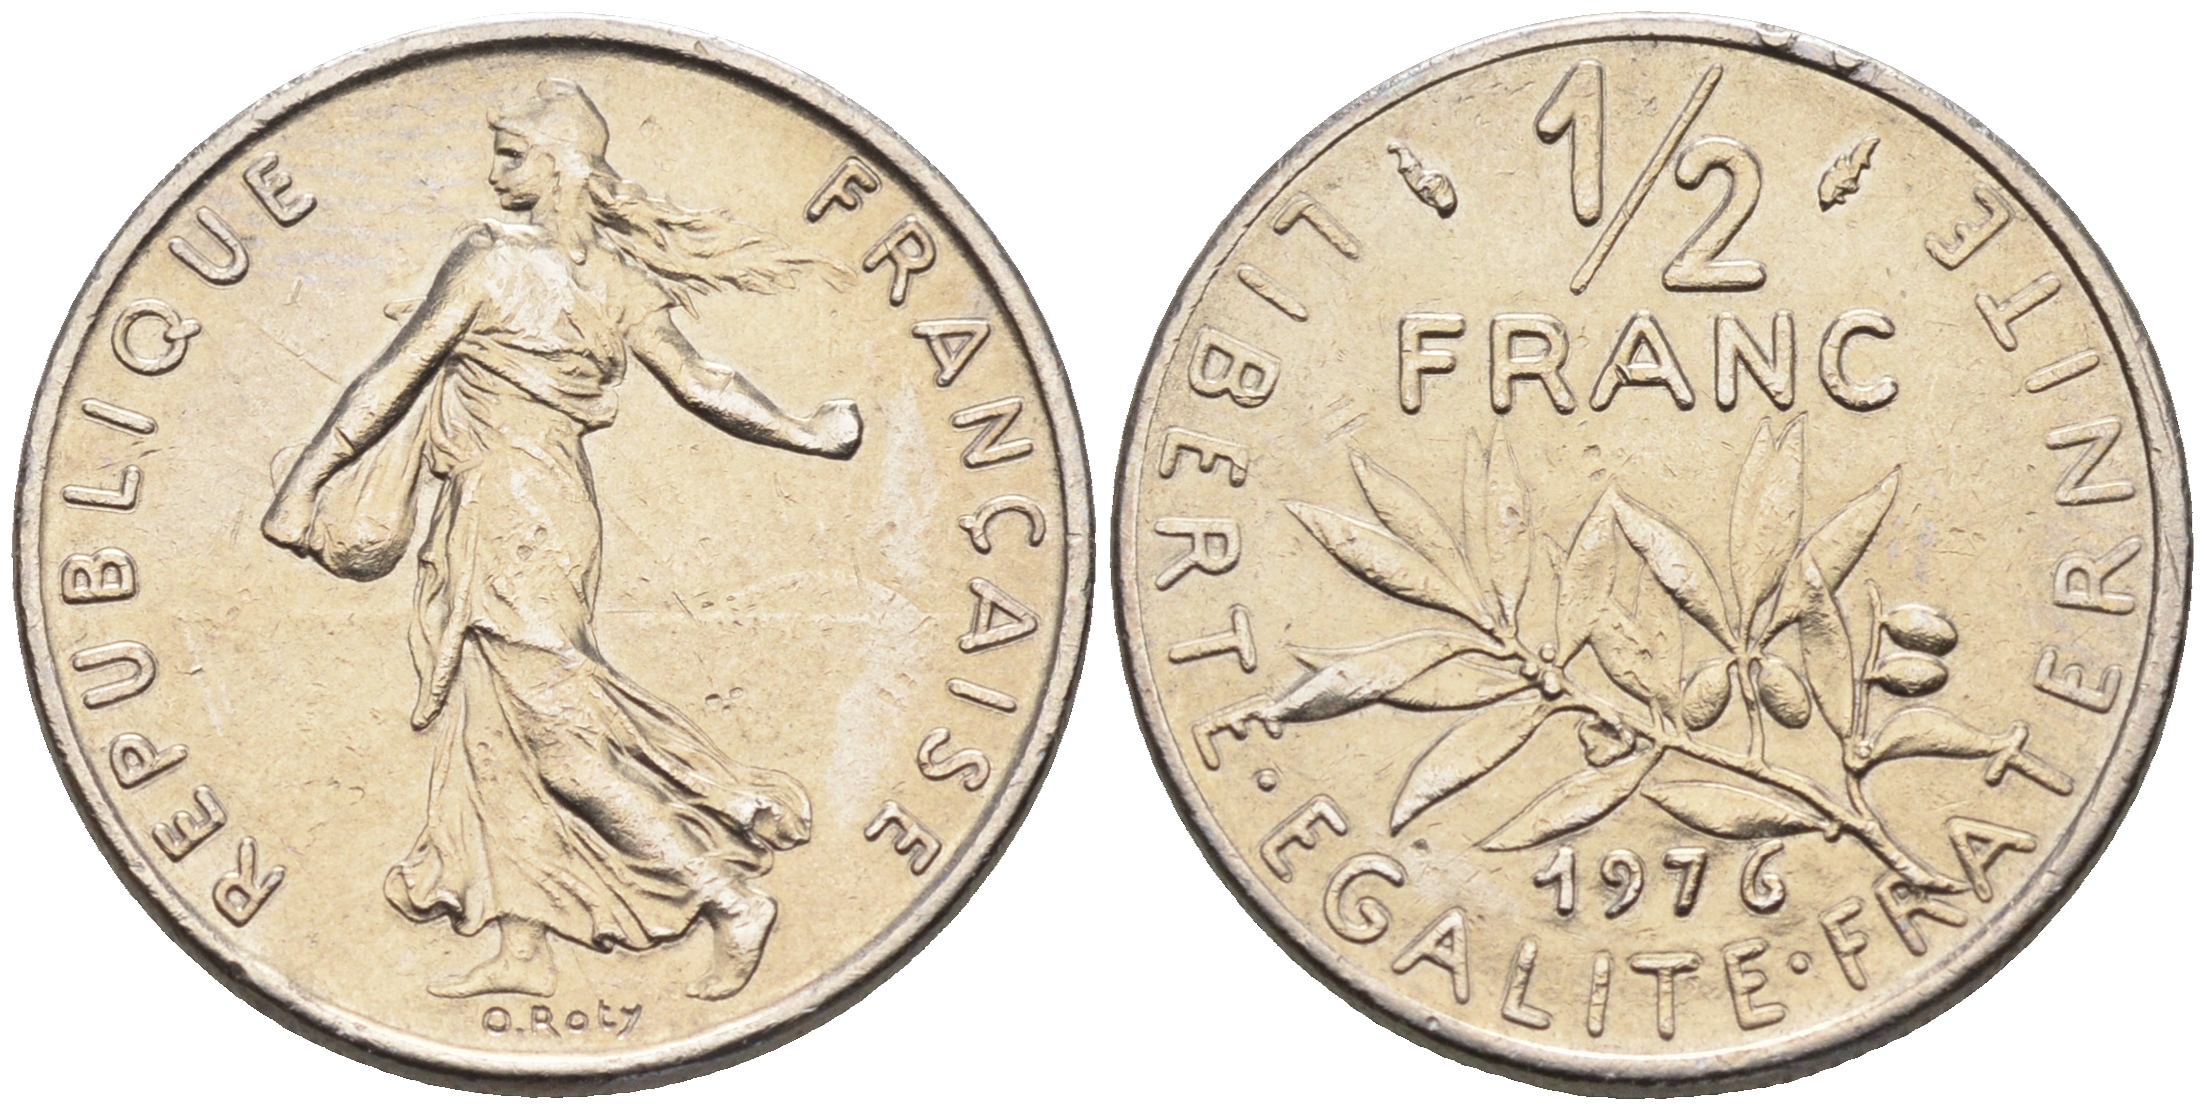 Серебряная монета Сеятель 1924. Франция монета Сеятель. Франция 1 Франк 1960. Сеятель монета 1977 года. Памятные монеты 2024 года